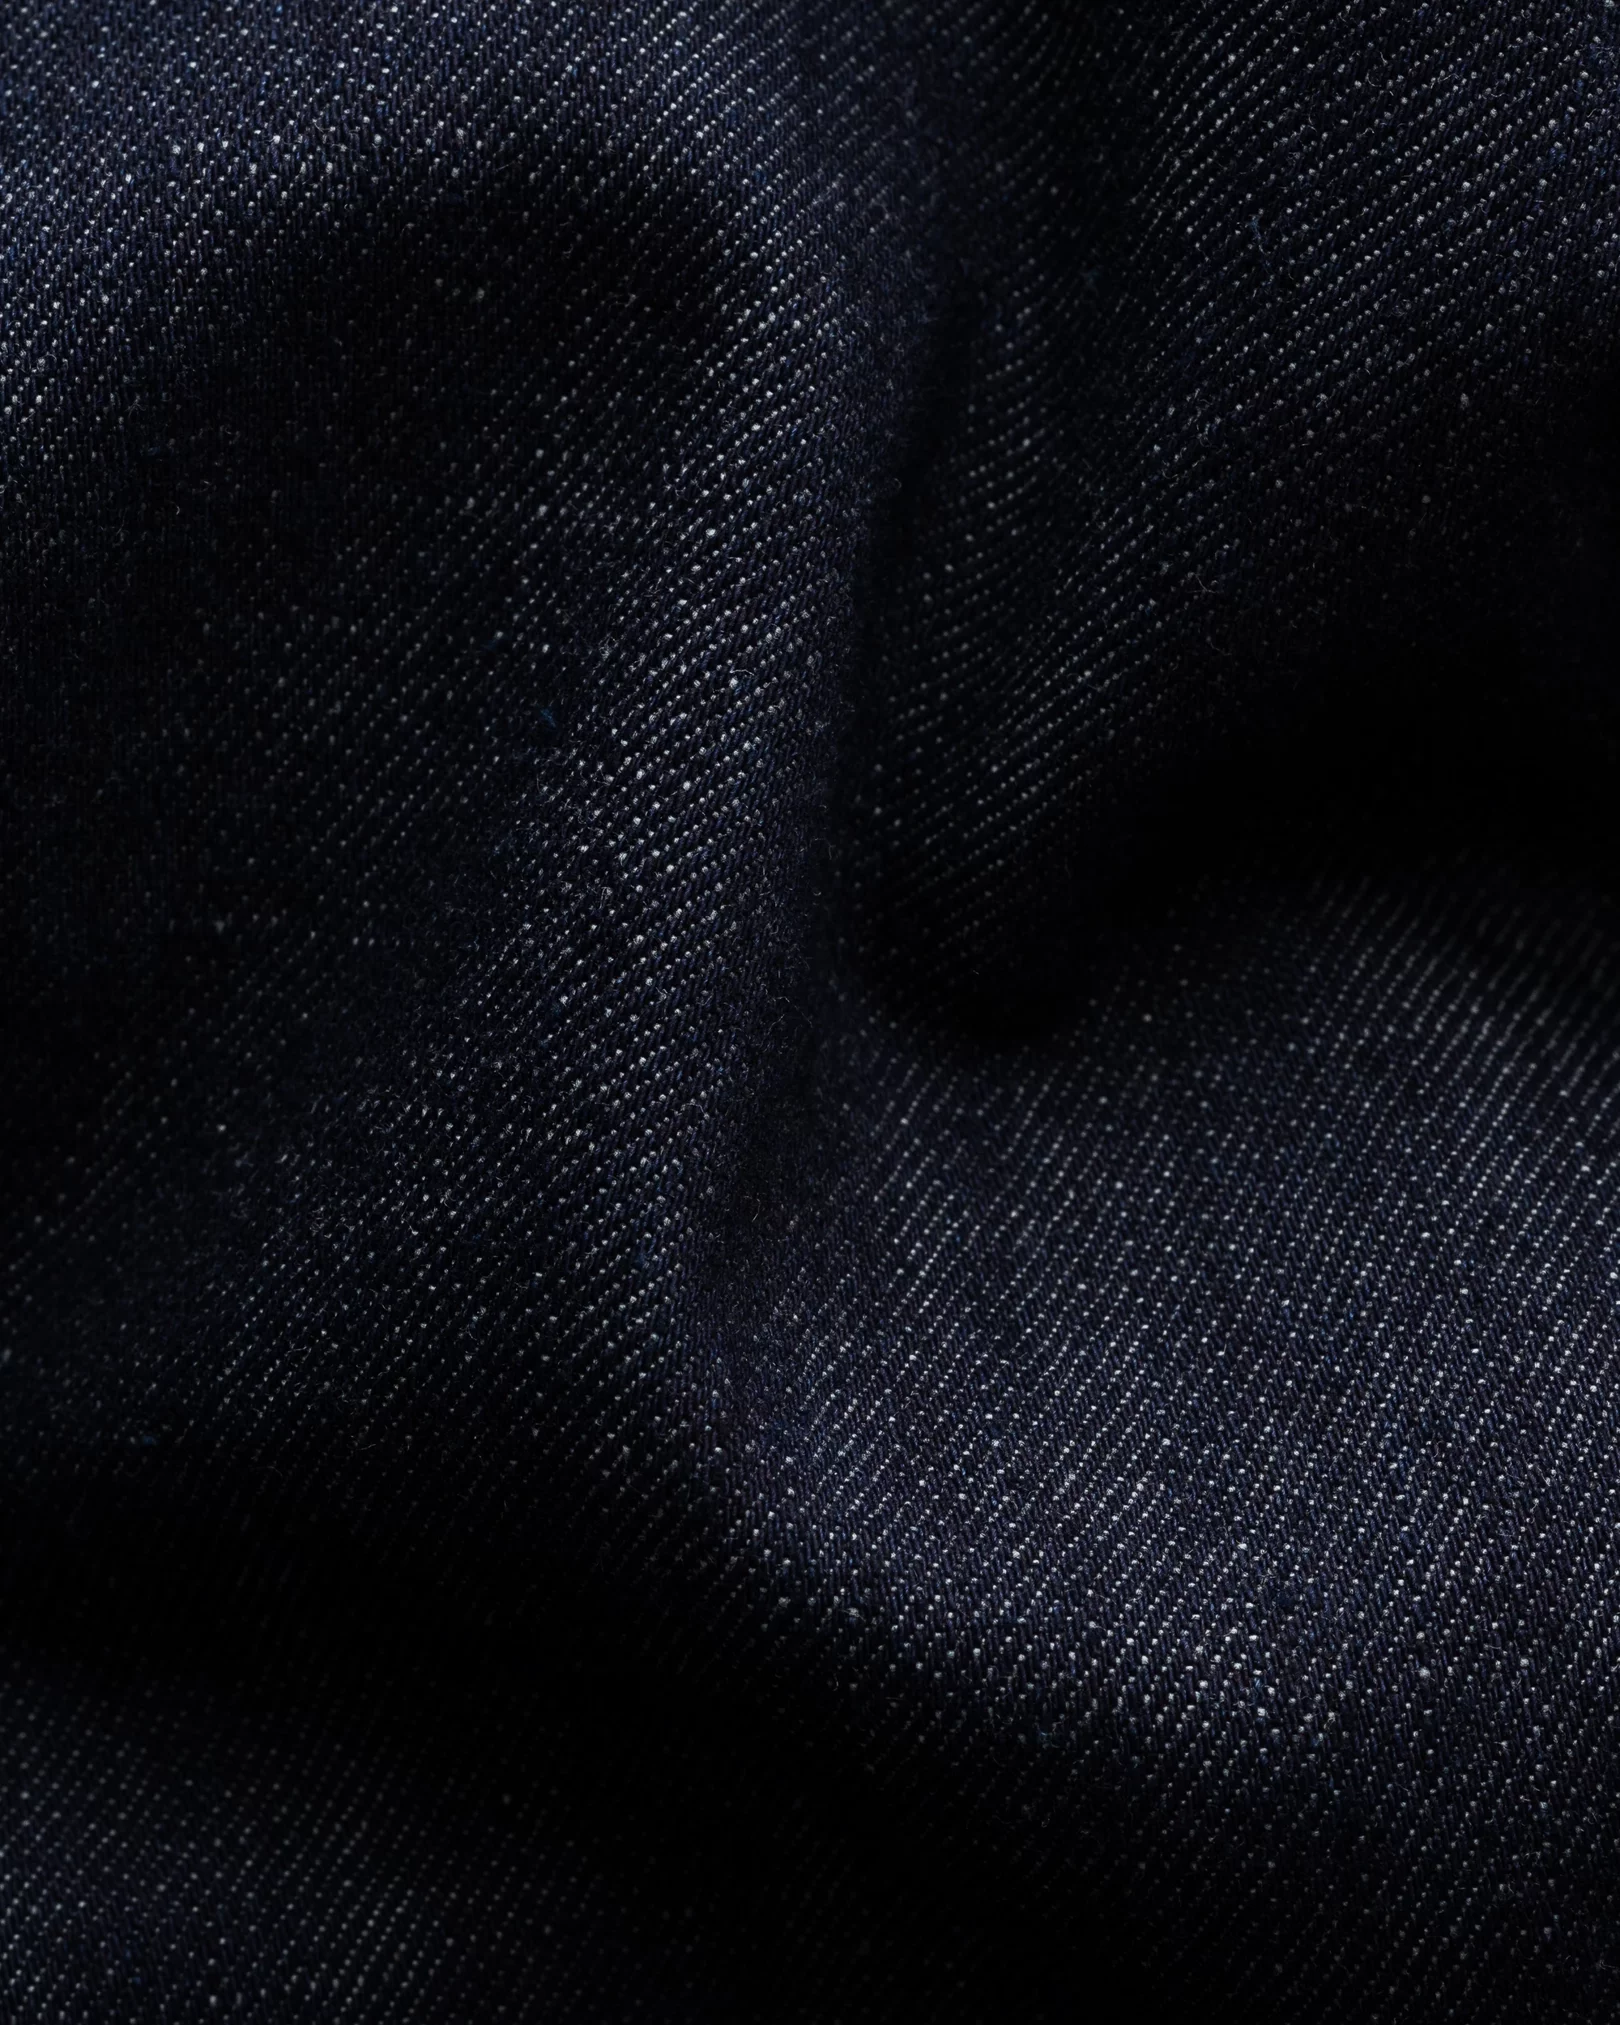 Dark Blue Denim Shirt – Button Down - Eton